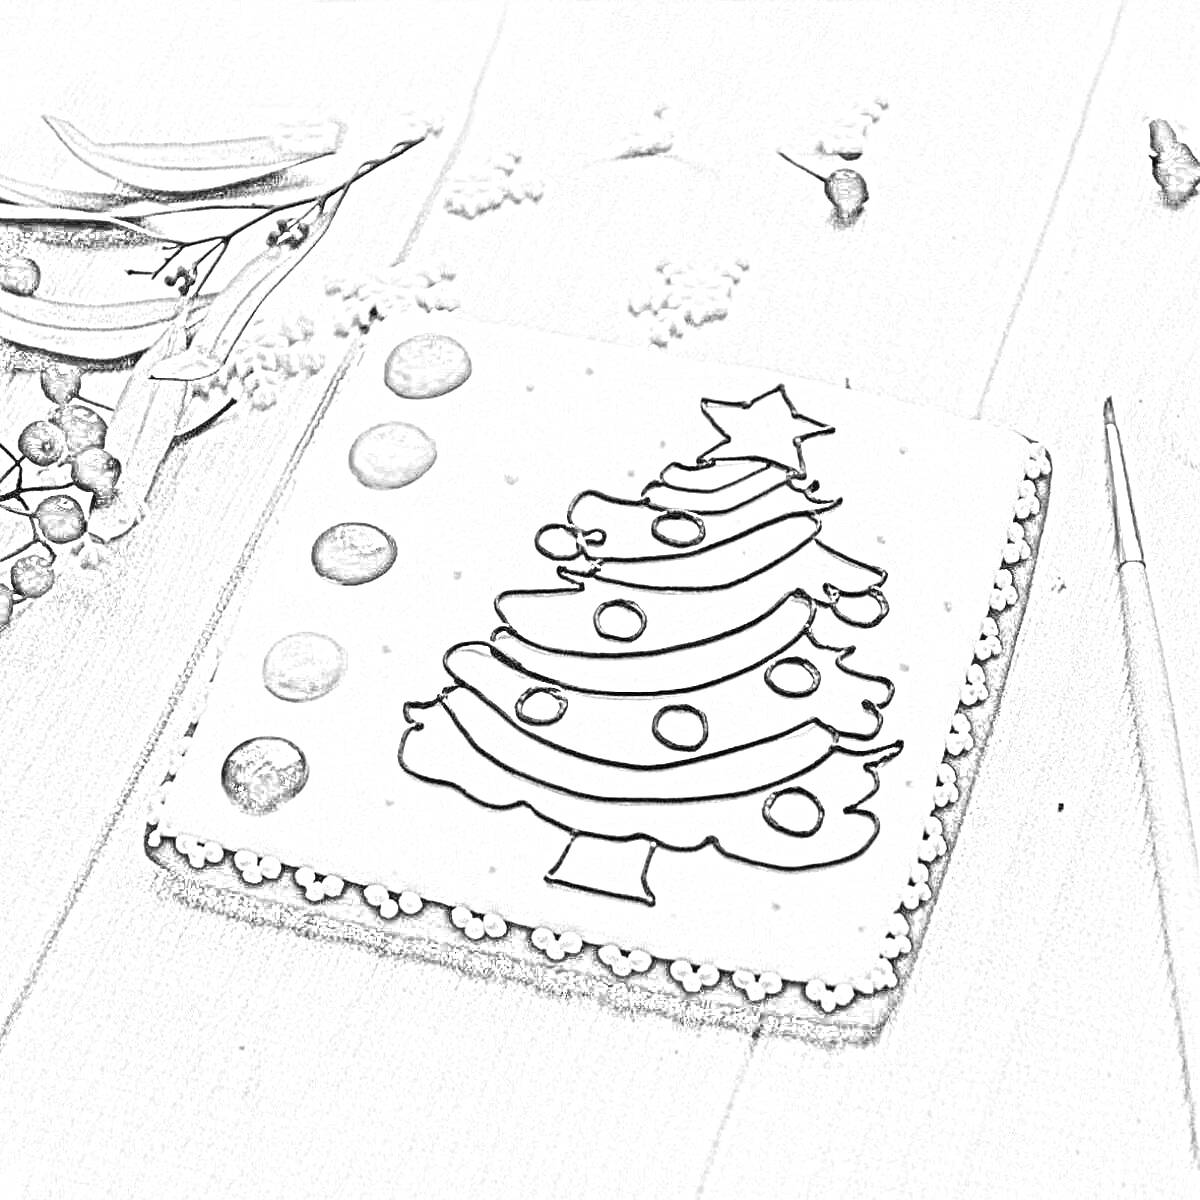 Раскраска Пряник с раскраской, изображающий новогоднюю елку со звездой на вершине, с красками и кистью.